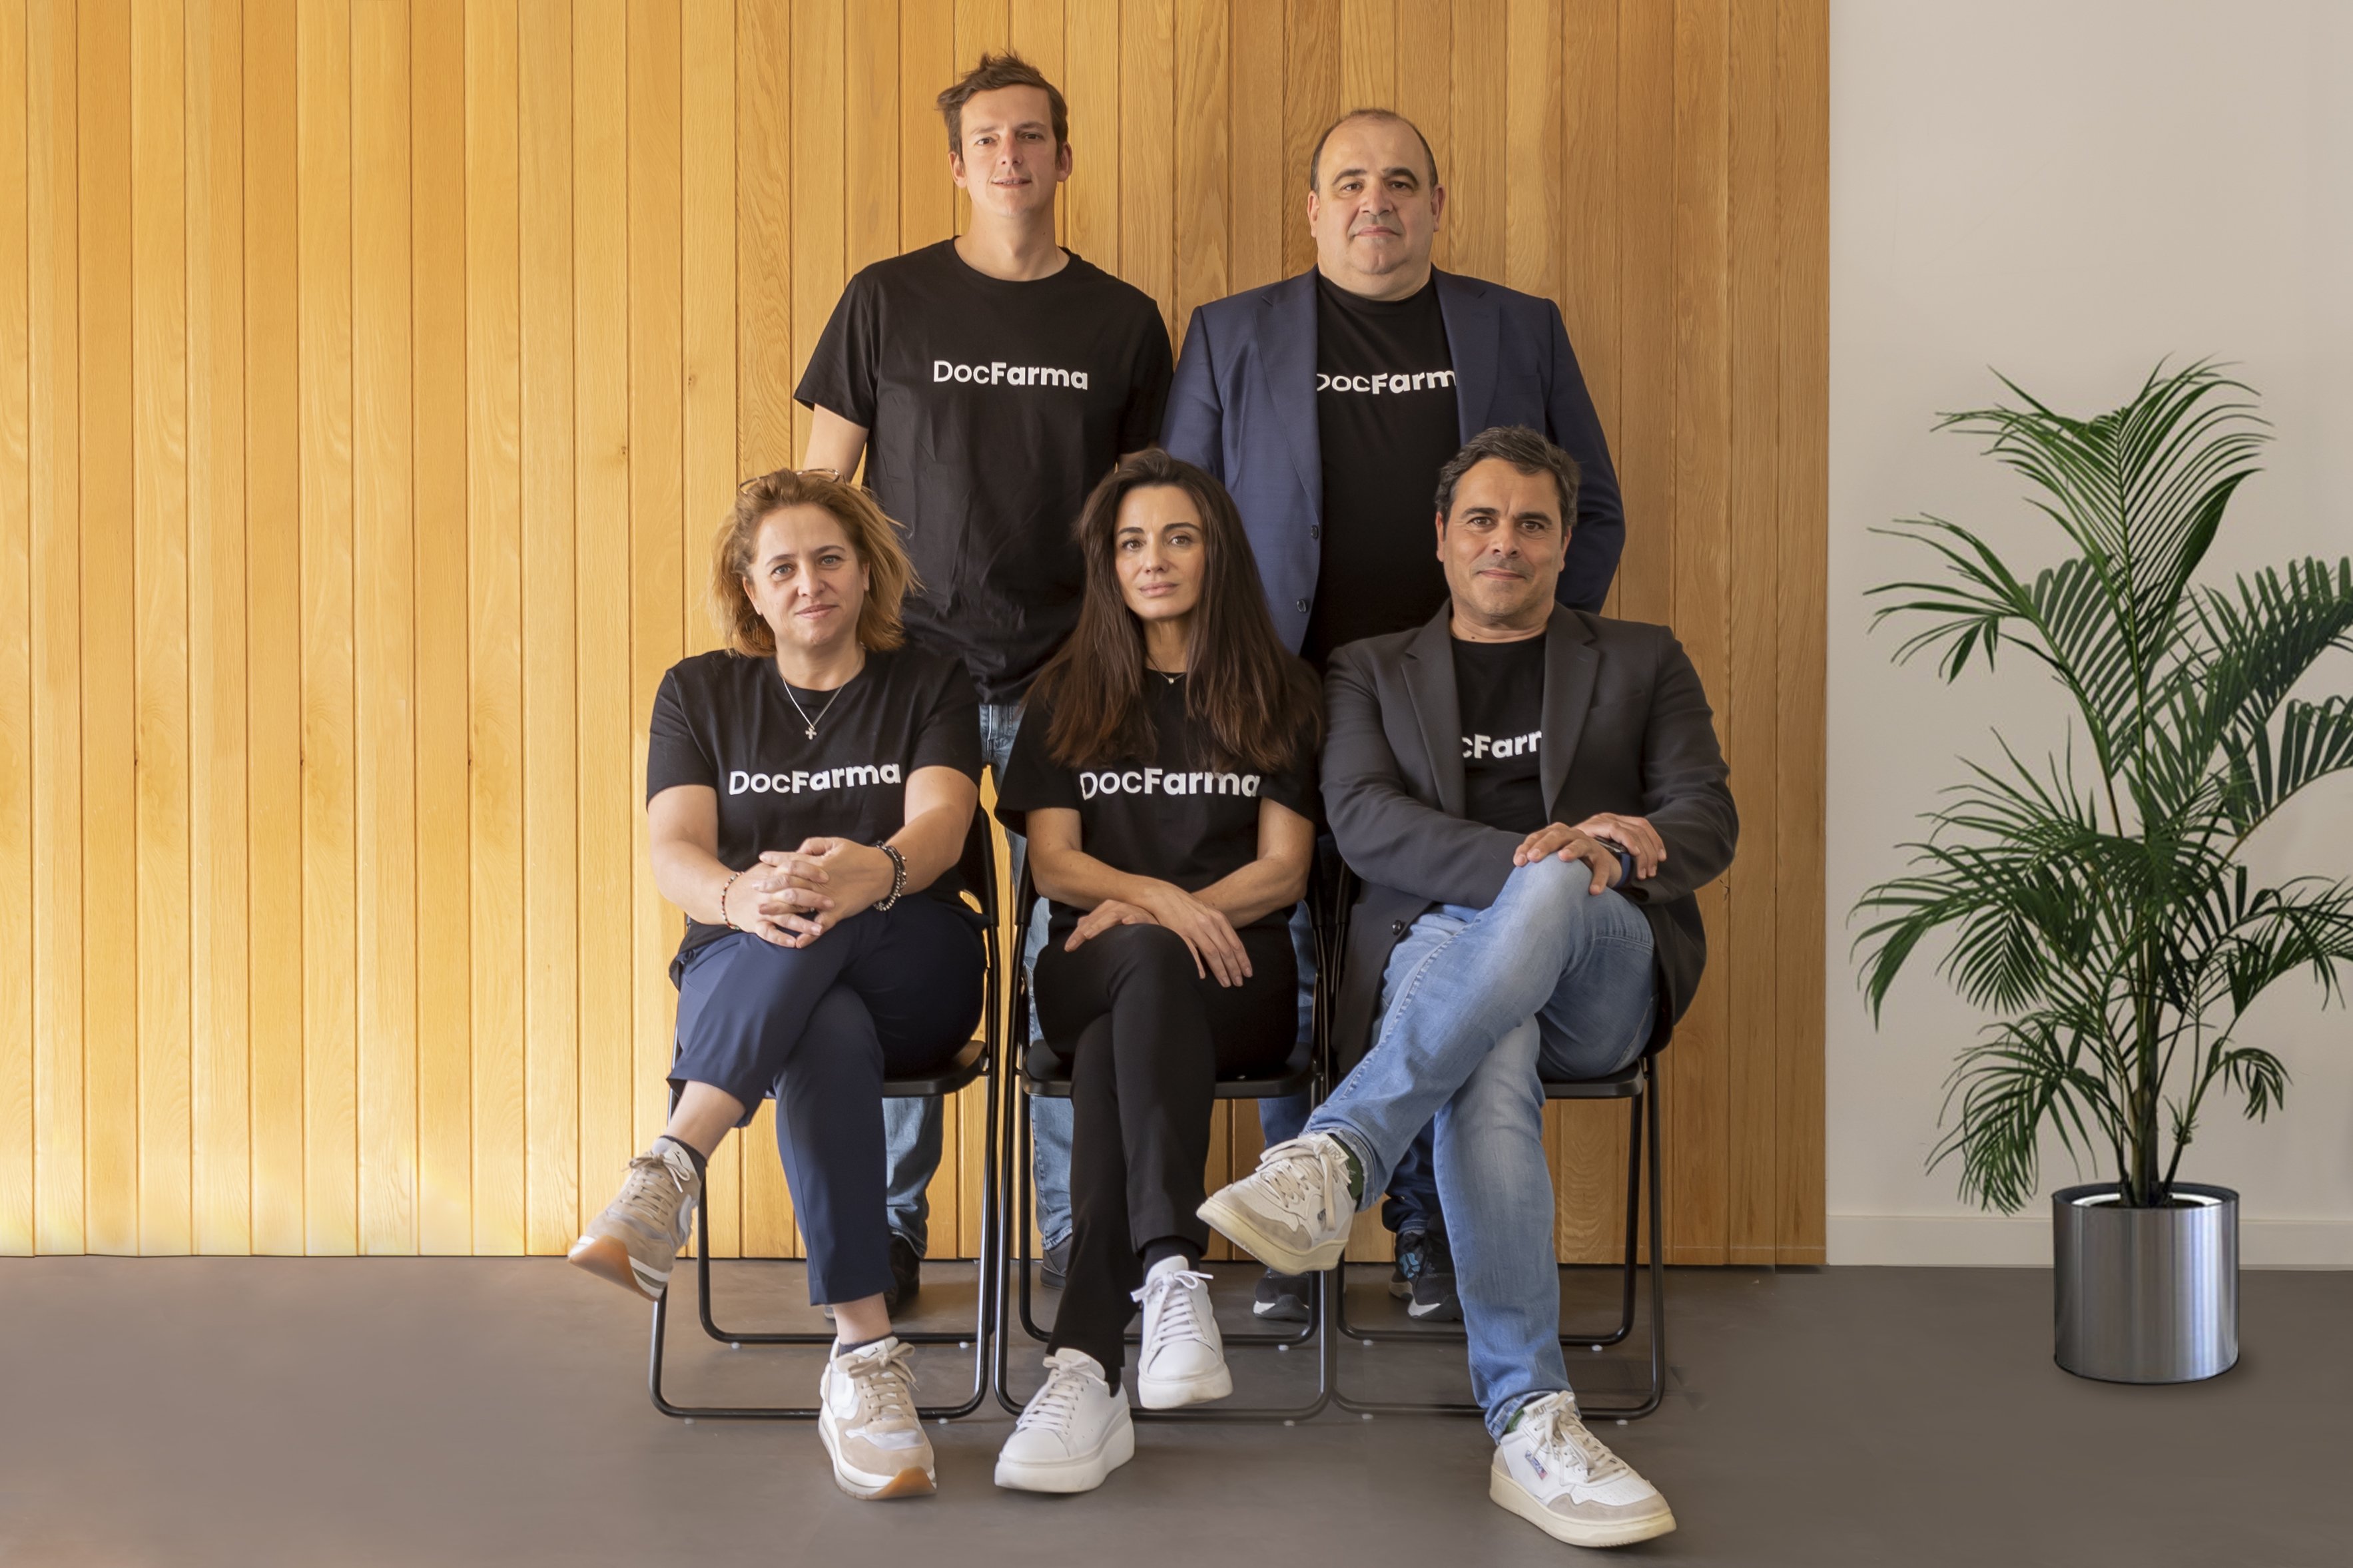 Nace DocFarma, la startup catalana que quiere digitalizar el sector farmacéutico